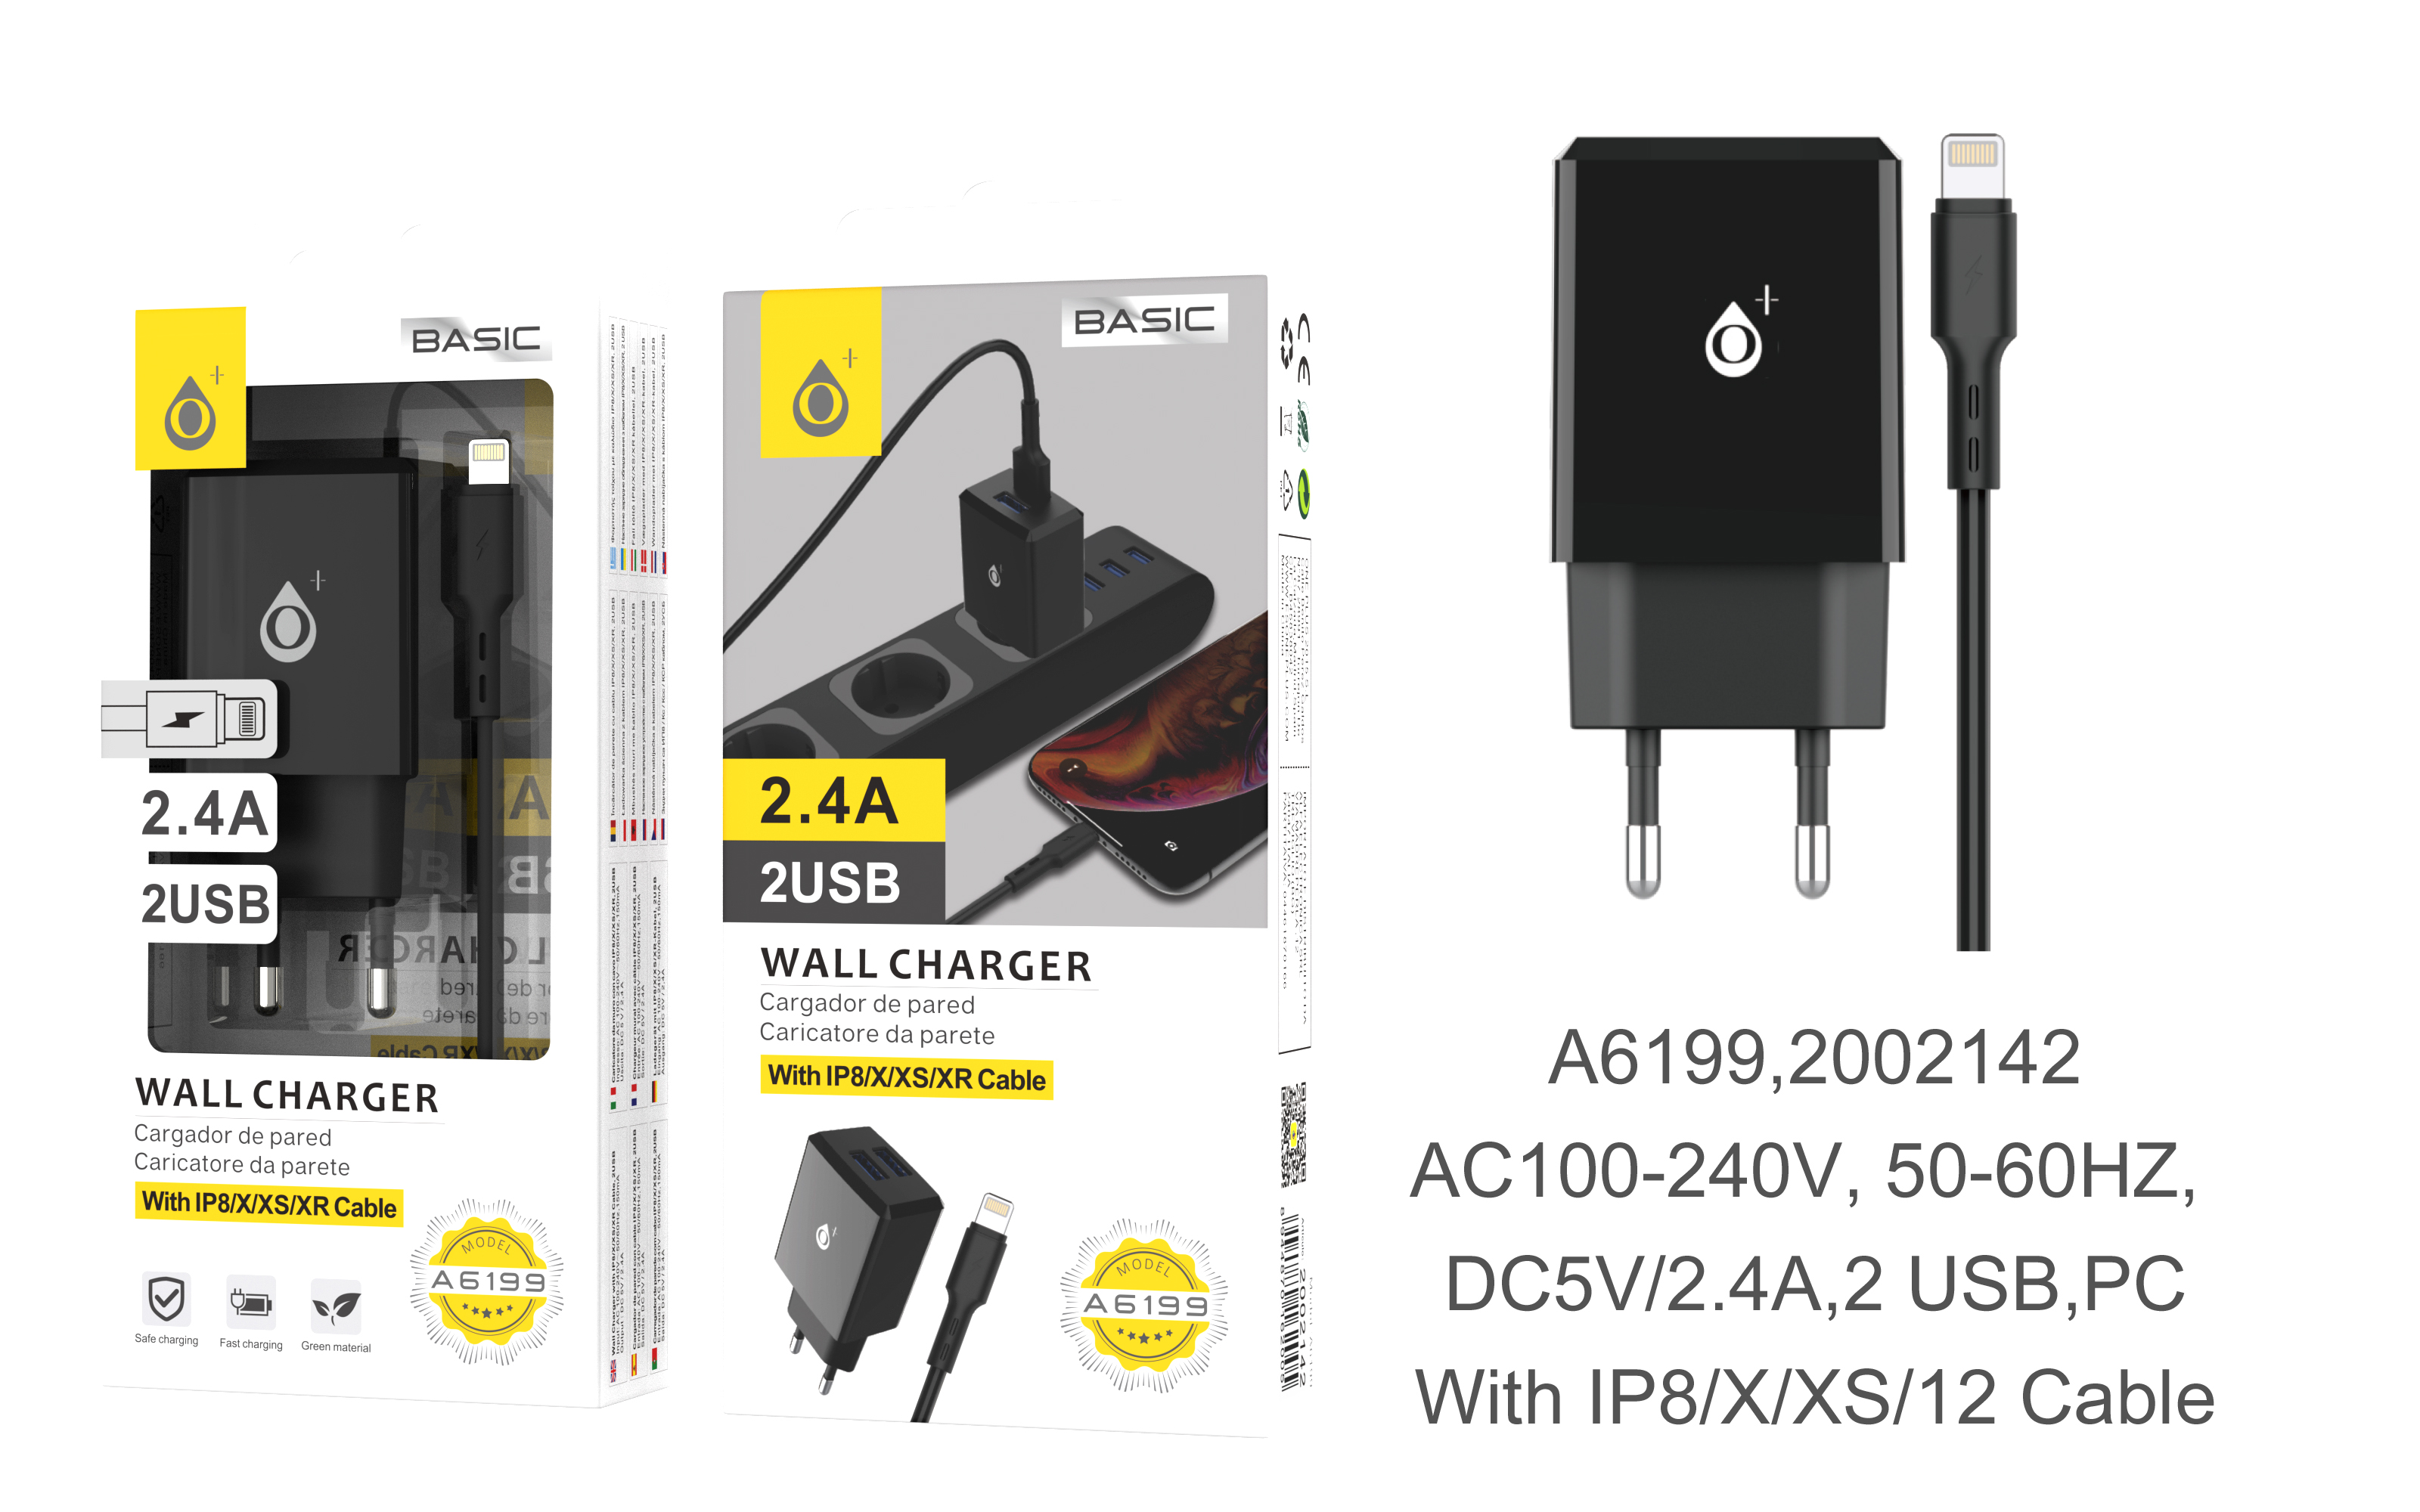 A6199 NE Cargador de Red S.Basic Tebe 2 USB con Cable IP5/6/7/8/X, 2 USB , 2.4A,Negro